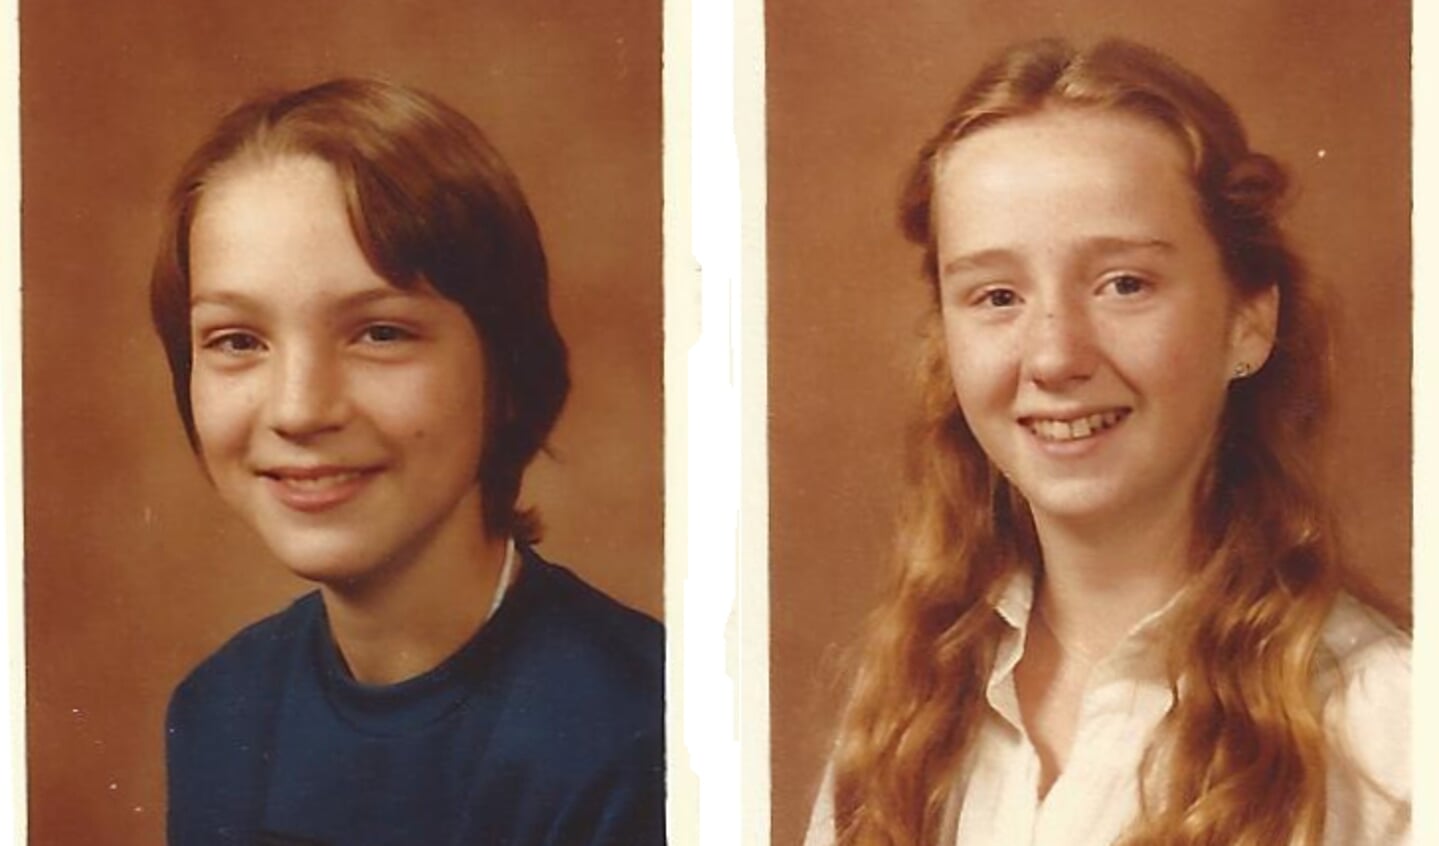 Ronald en Diana op oude schoolfoto's